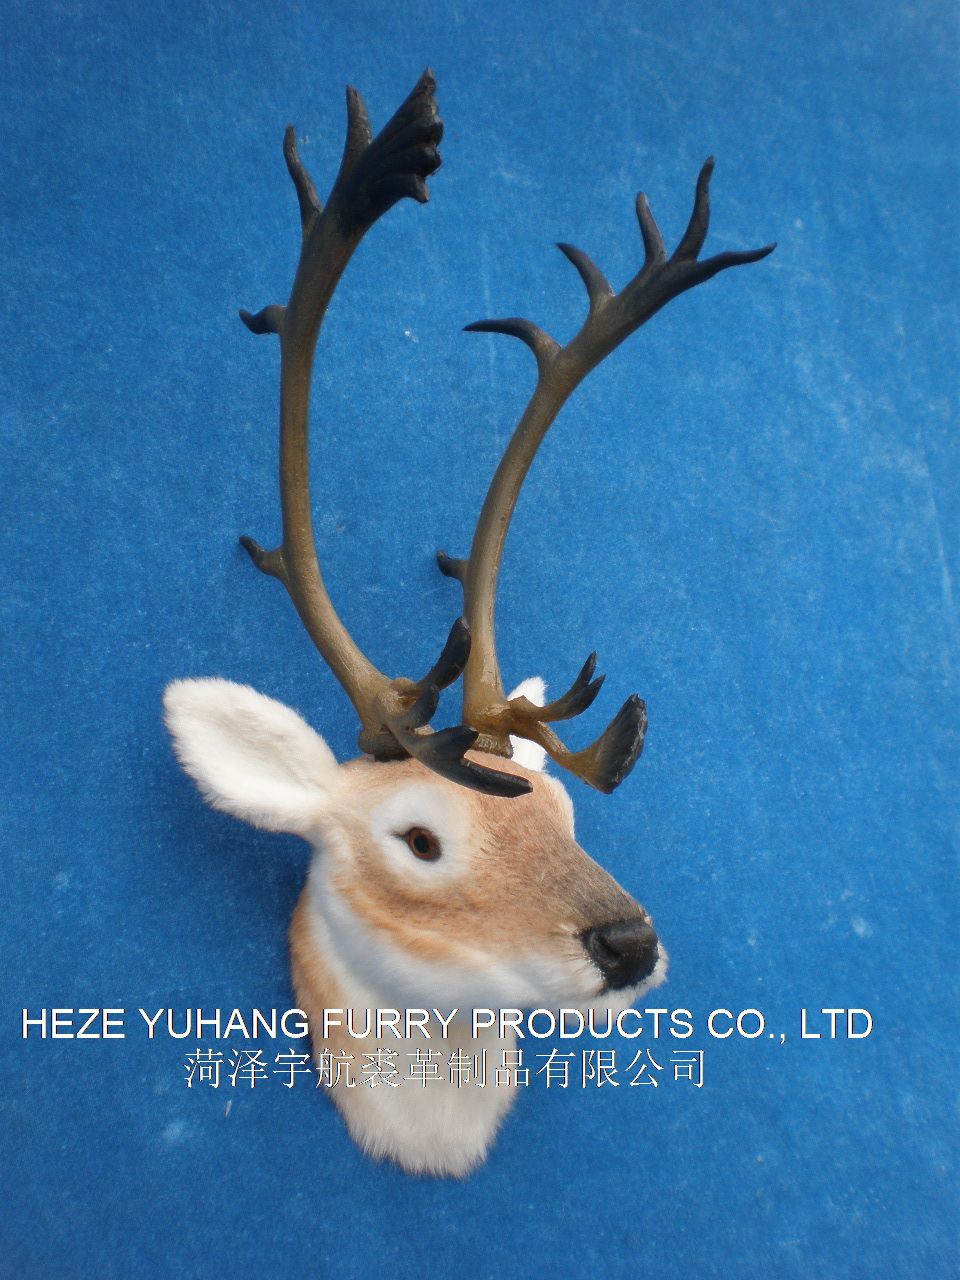 FHM526,菏泽宇航裘革制品有限公司专业仿真皮毛动物生产厂家